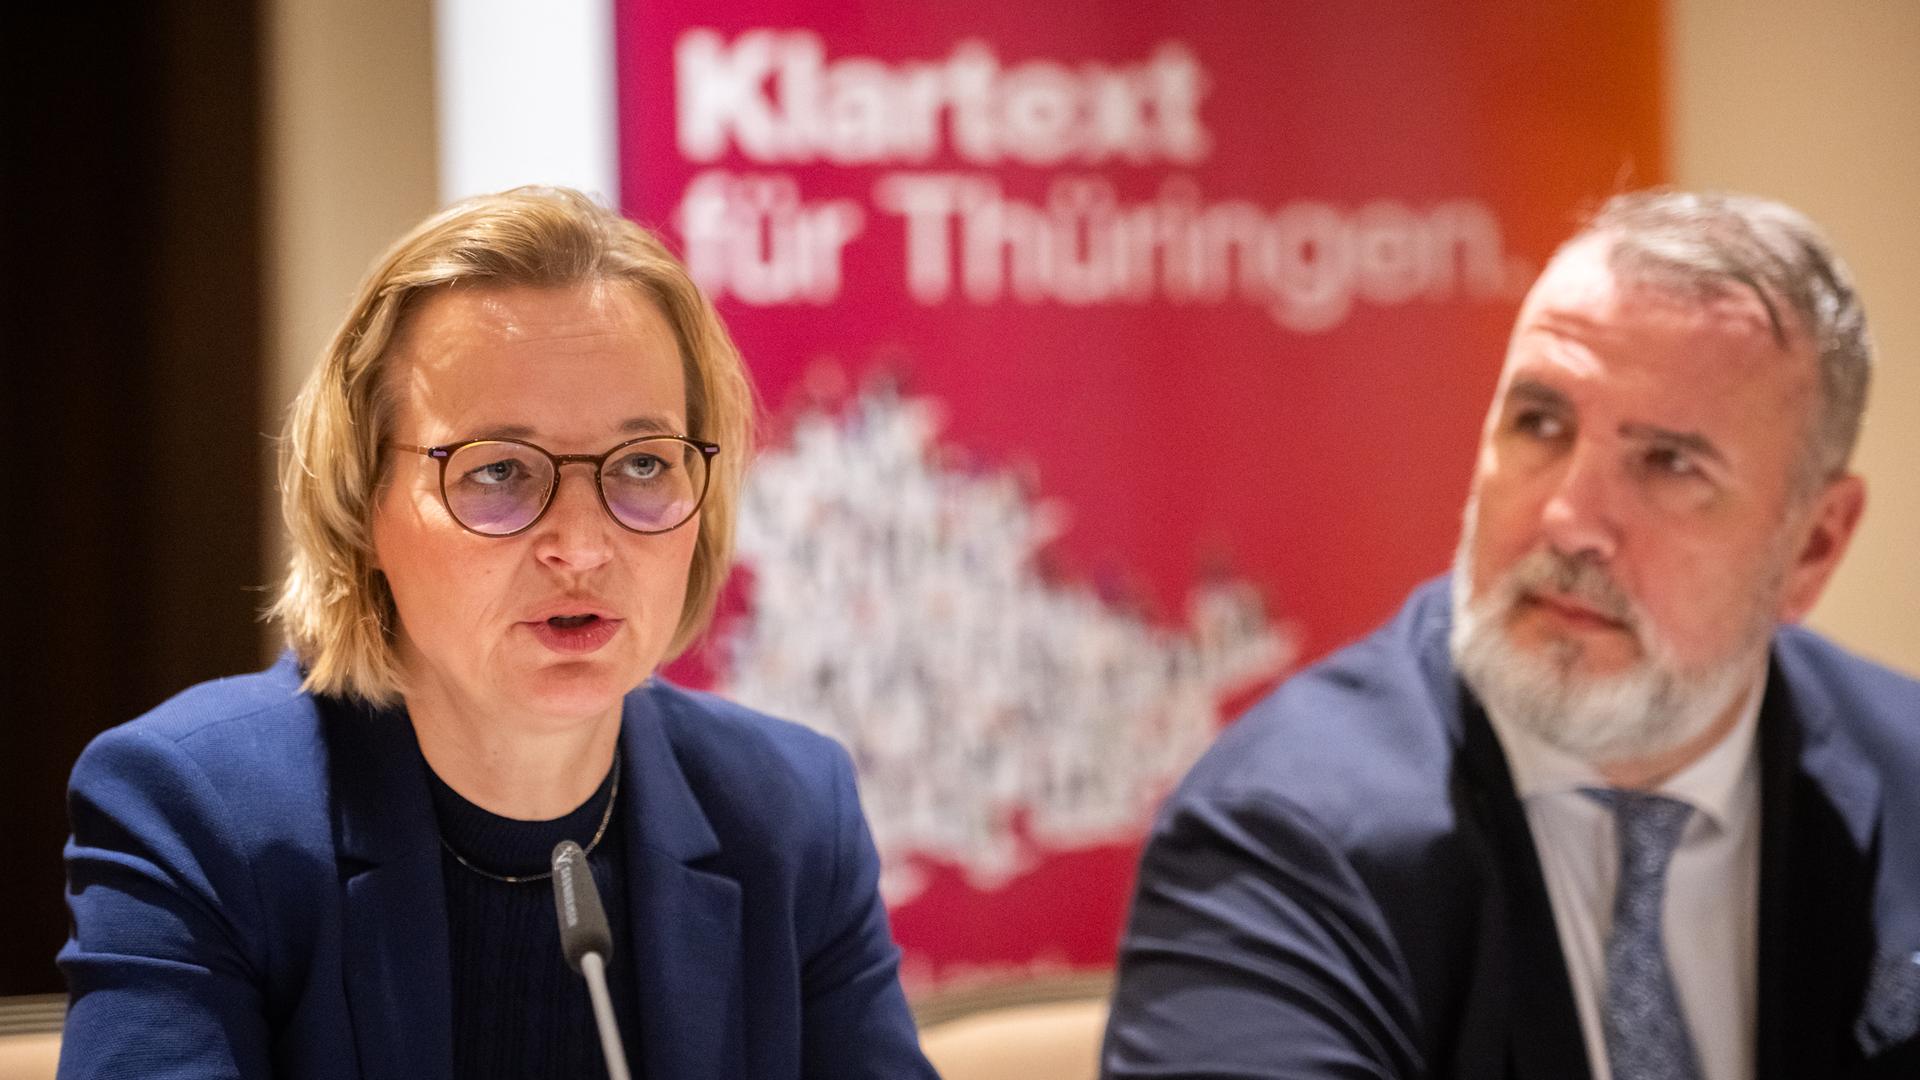 Auf dem Bild sieht man die Landesvositzenden des Bündnis Sahra Wagenknecht vor einem Mikrofon sitzen. Im Hintergrund erkennt man unscharf den Schriftzug "Klartext für Thüringen"